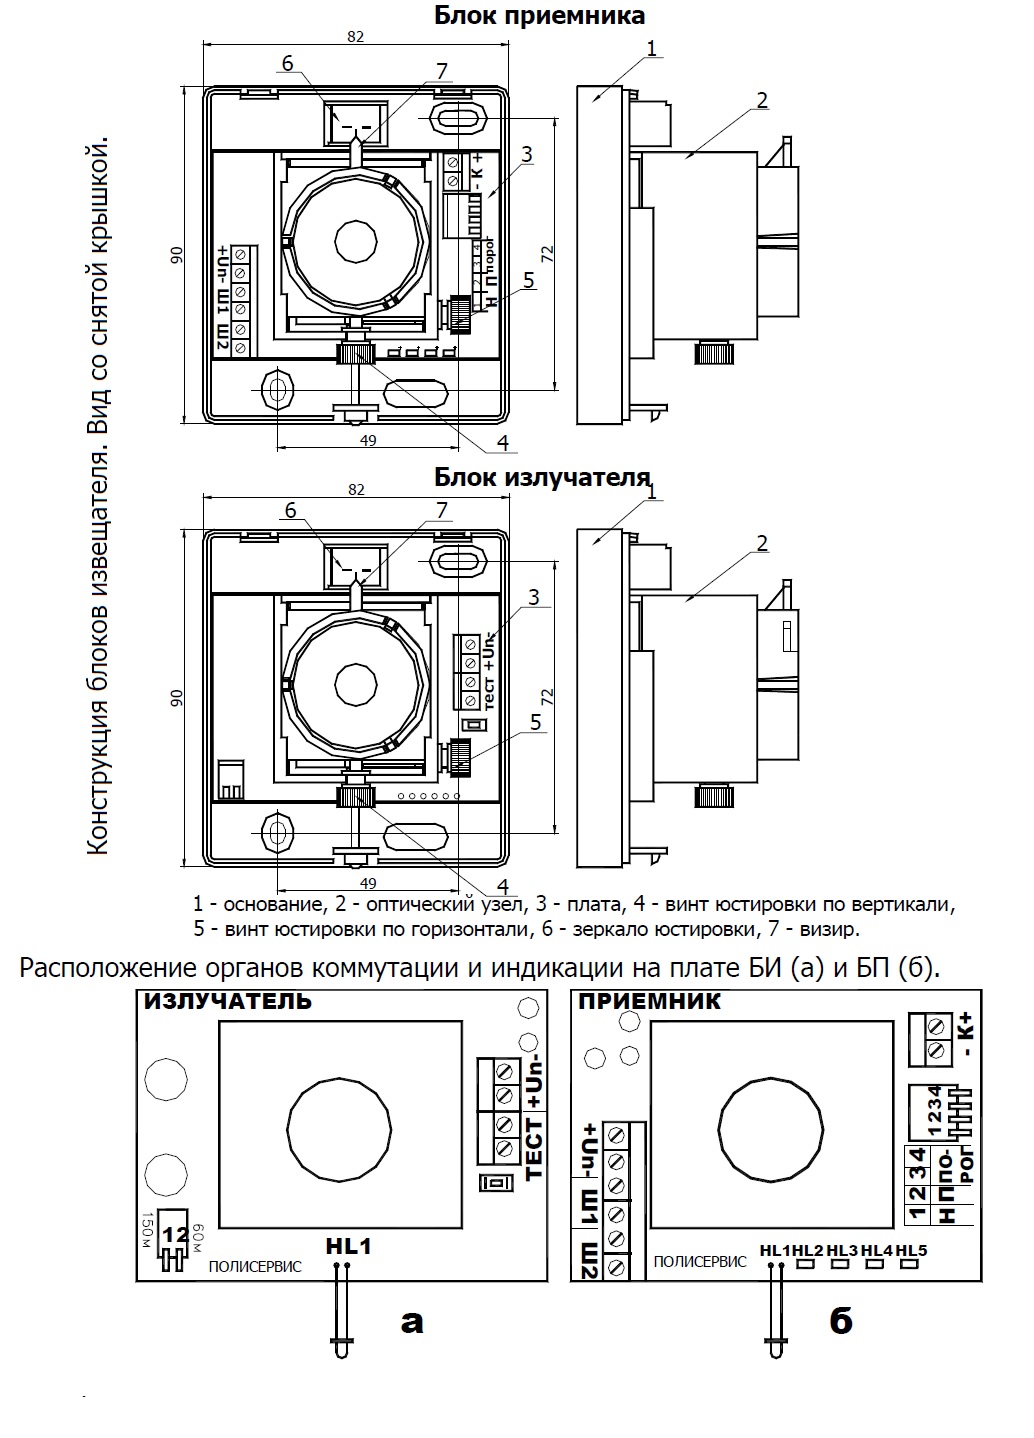 Извещатель охранный объемный оптико-электронный (датчик движения) DSC LC-100 PI